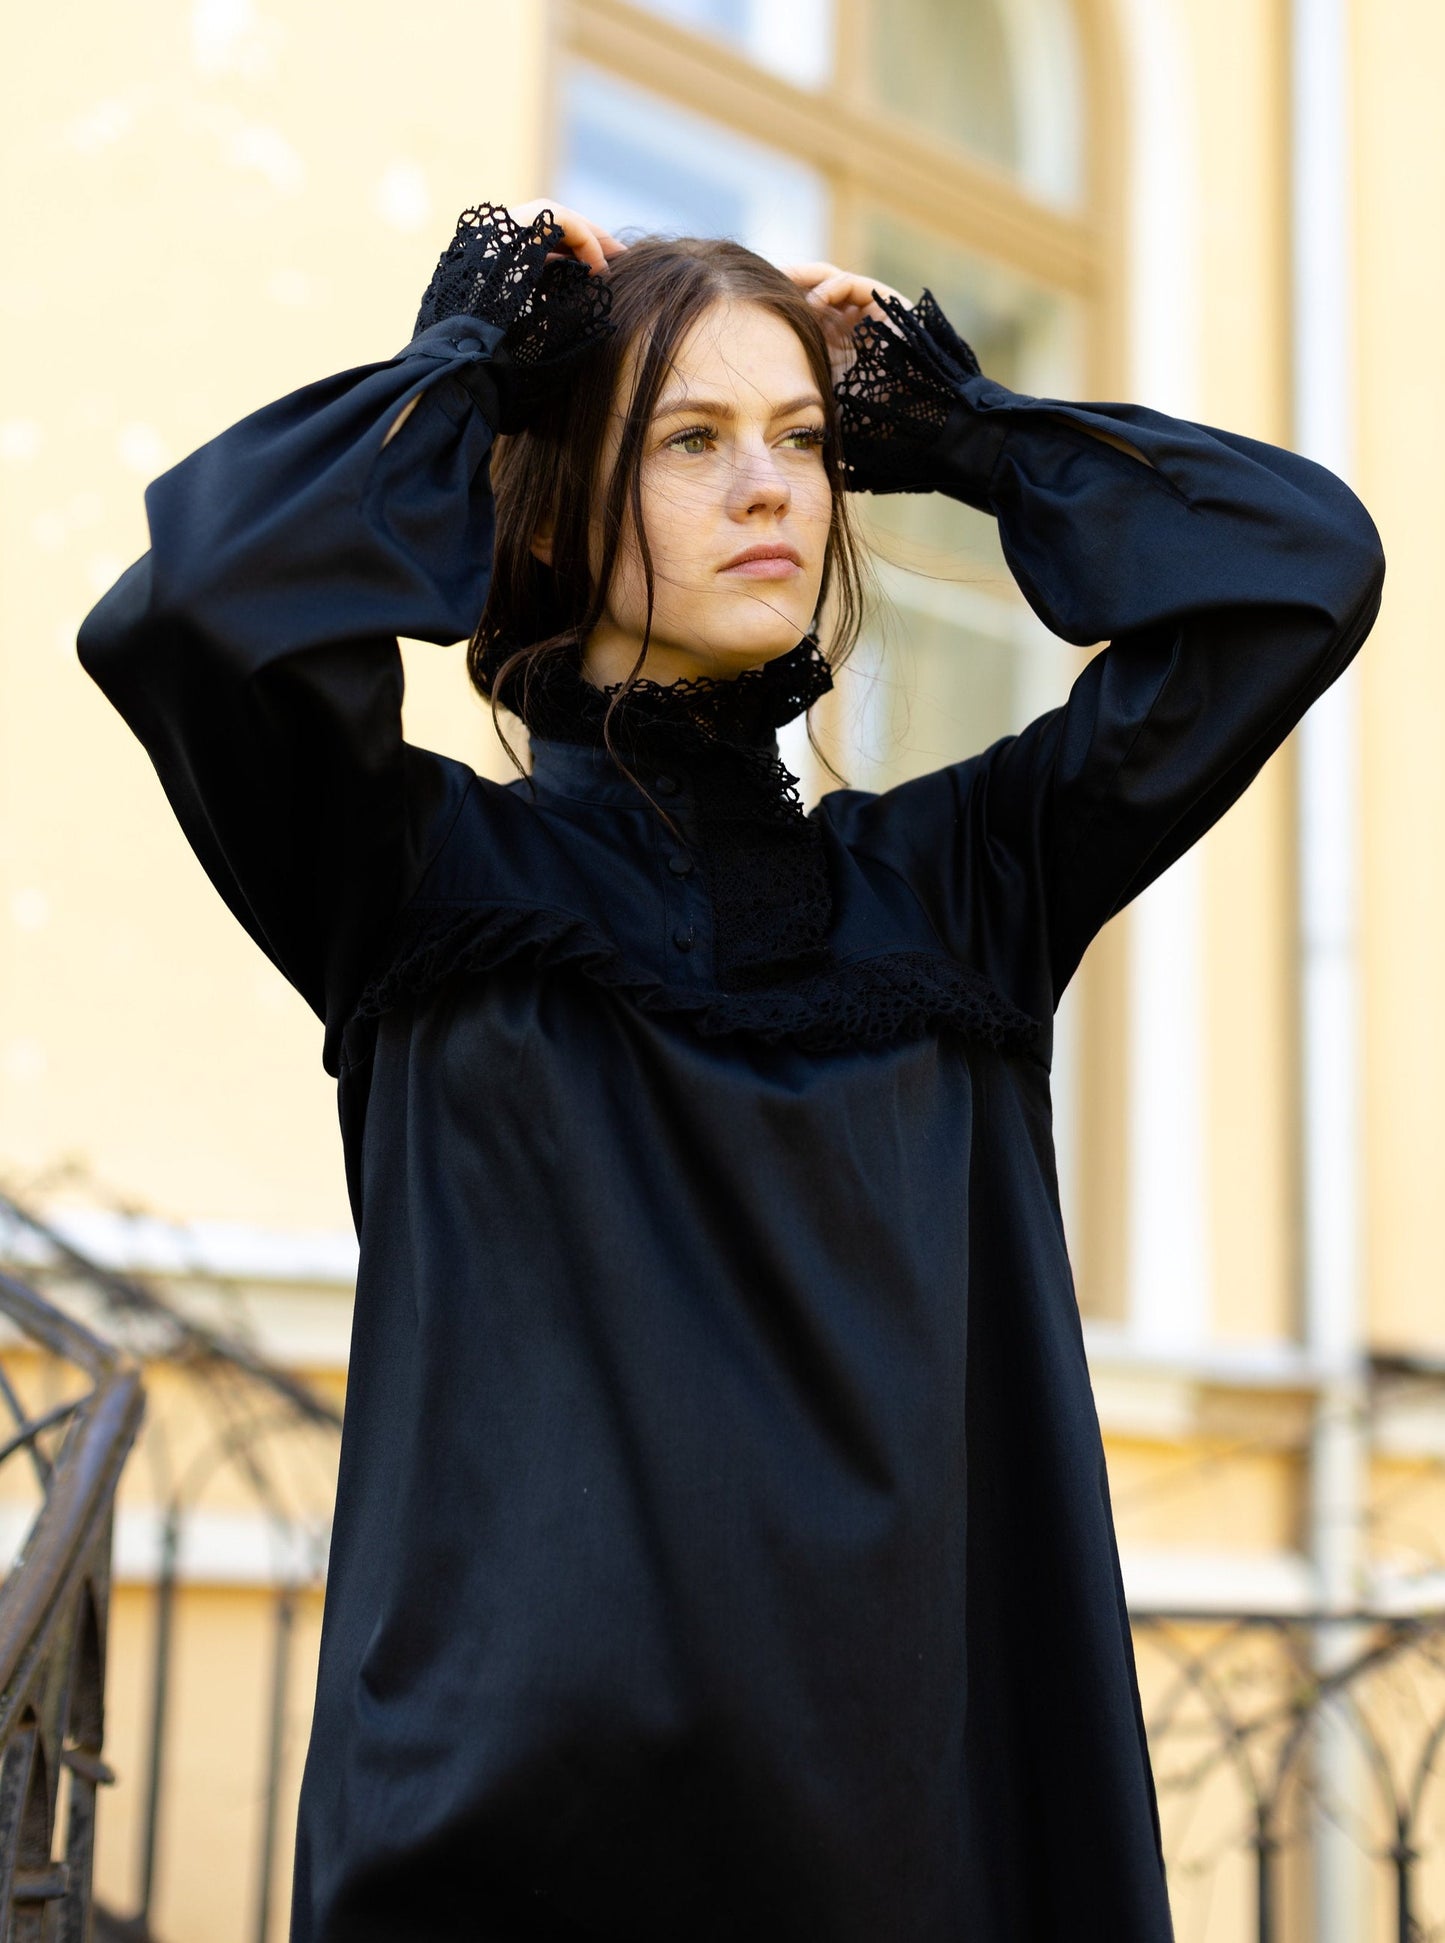 Victorian Winter Maxi Nightgown in Black Cotton